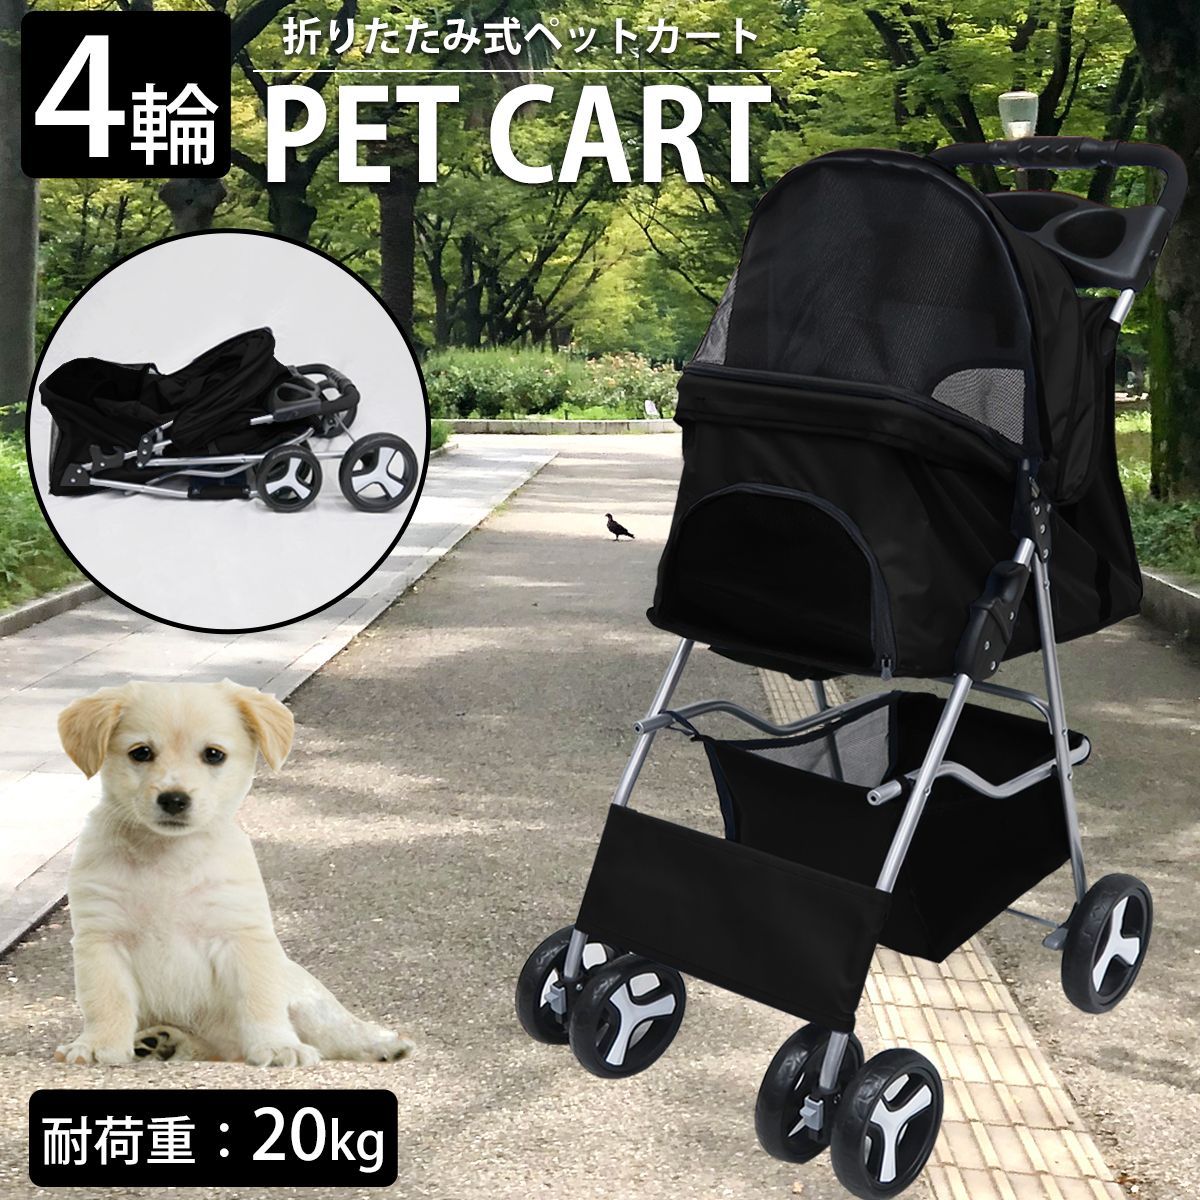 ペットバギー コンパクト 軽量 小型犬 中型犬 ペットカート クッション 